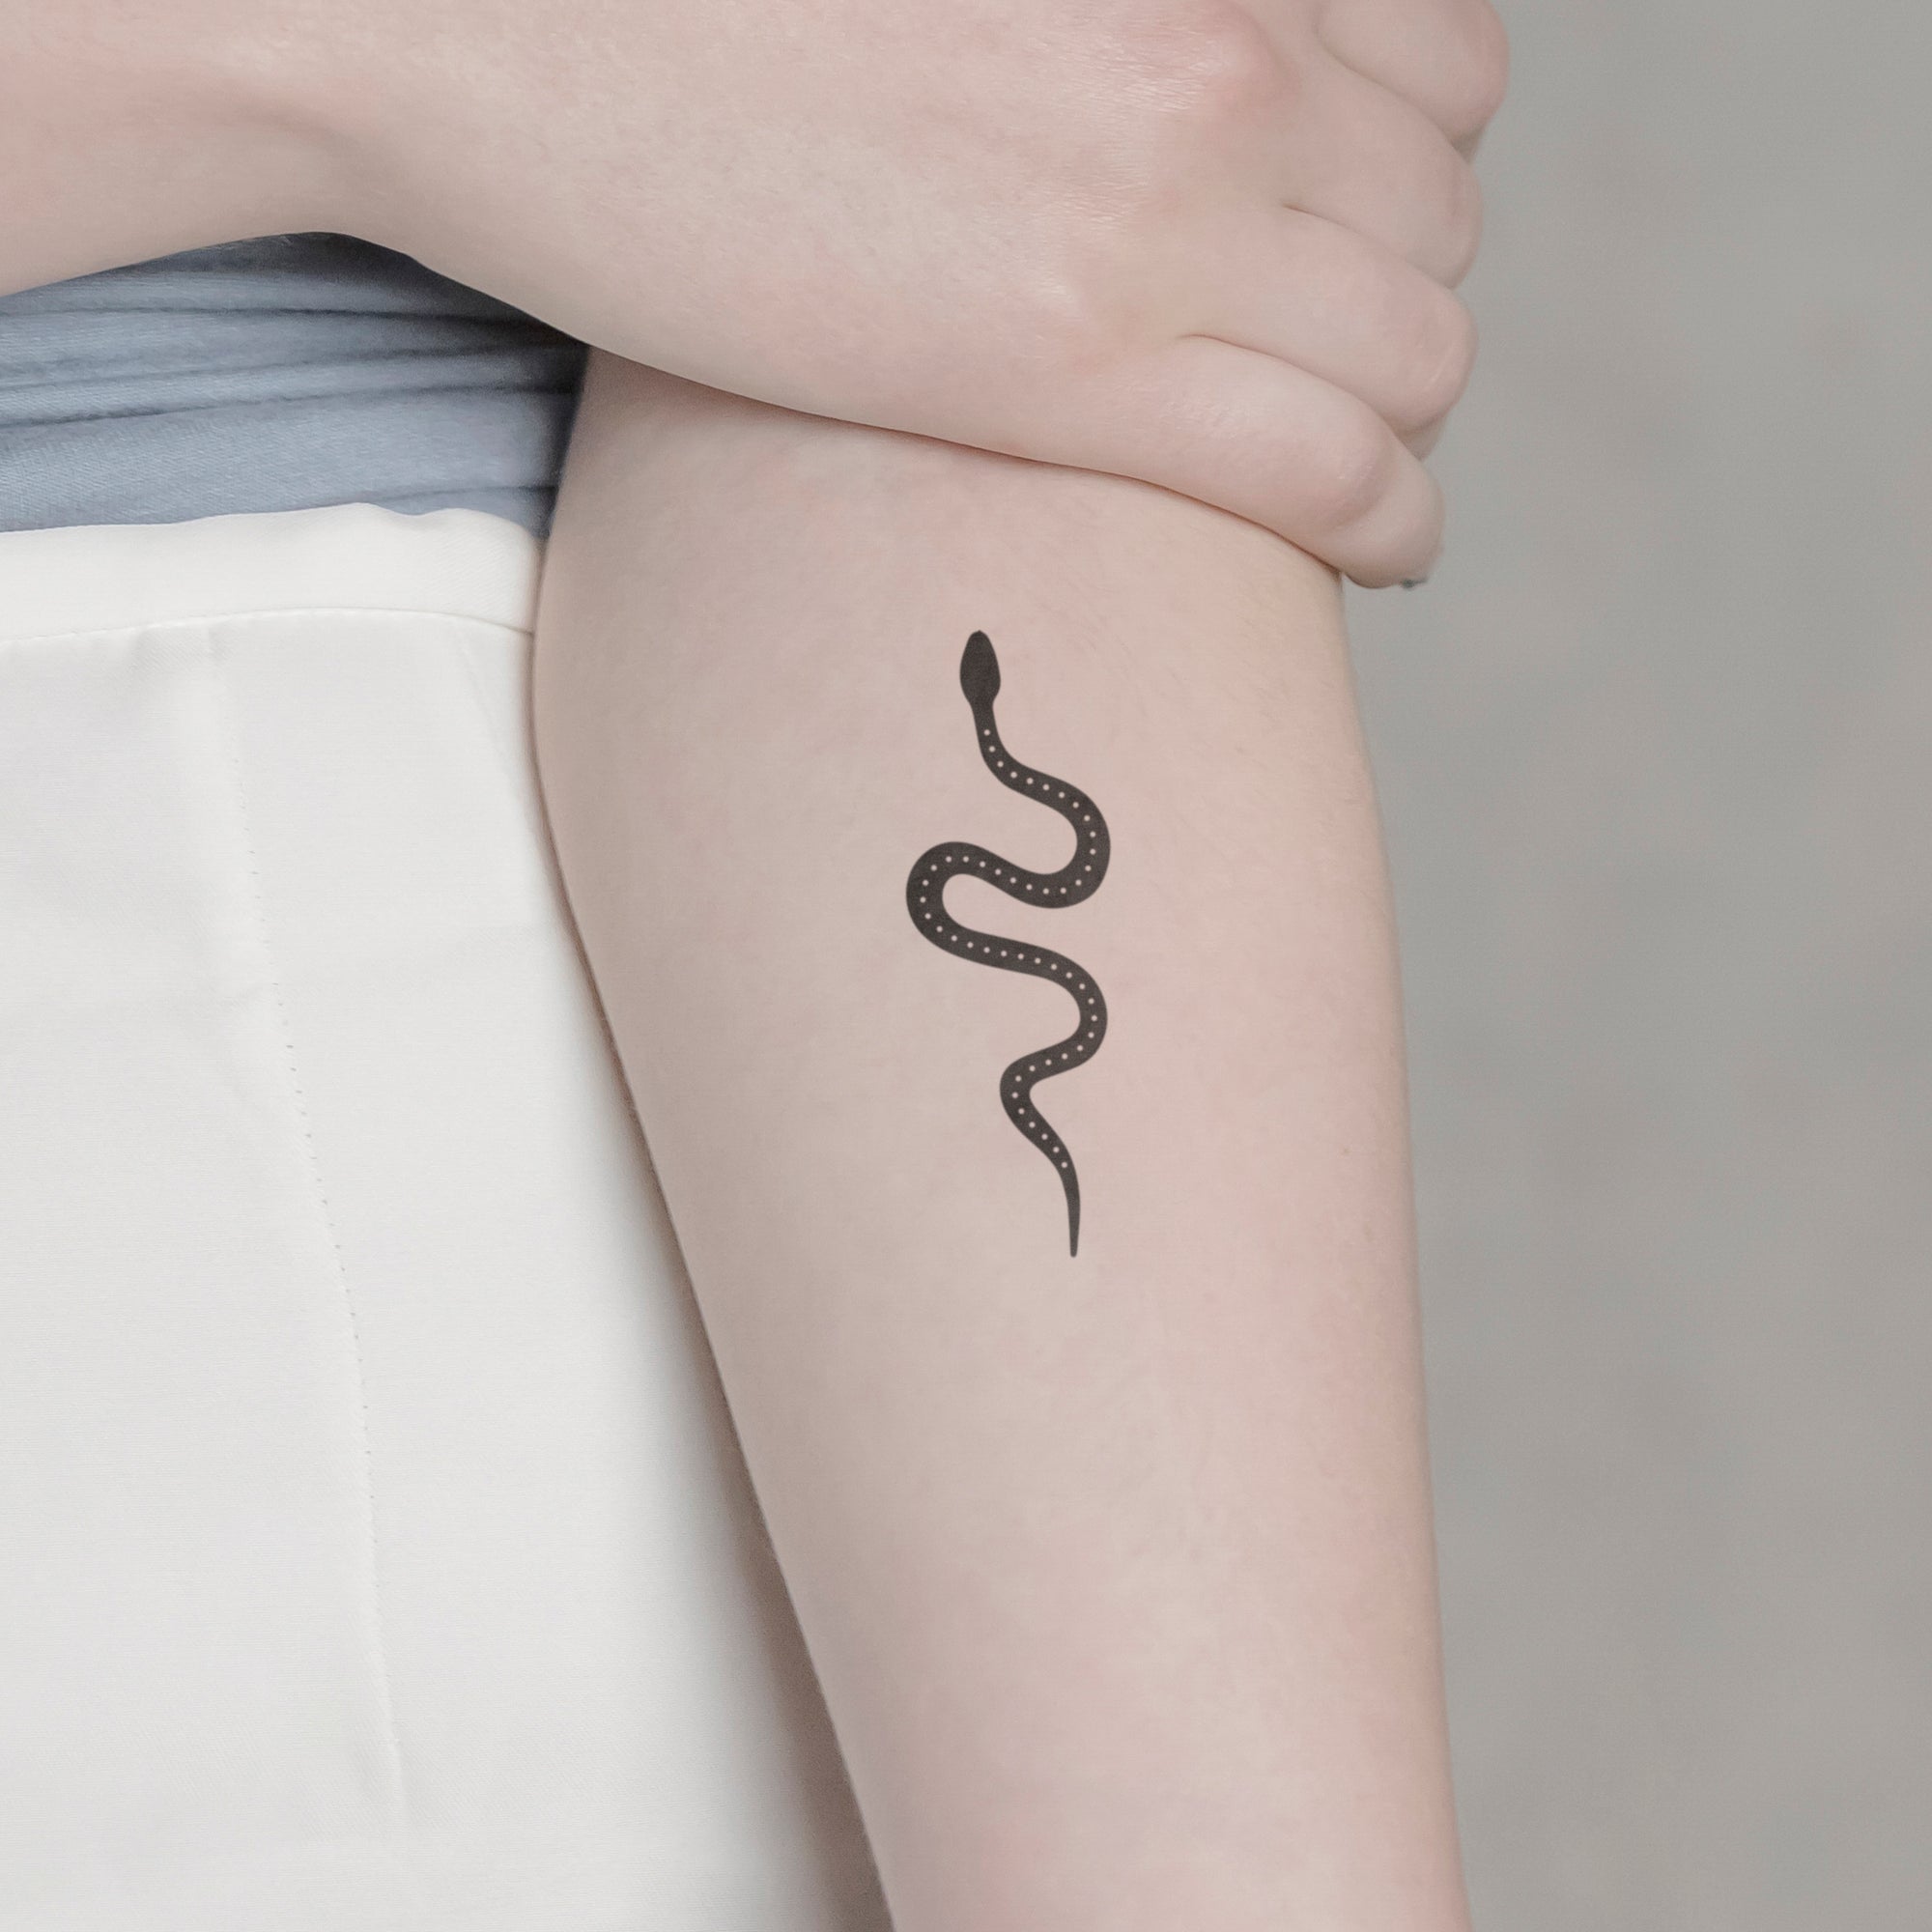 Schlange mit Punkten Tattoo von minink, der Marke für temporäre Tattoos.